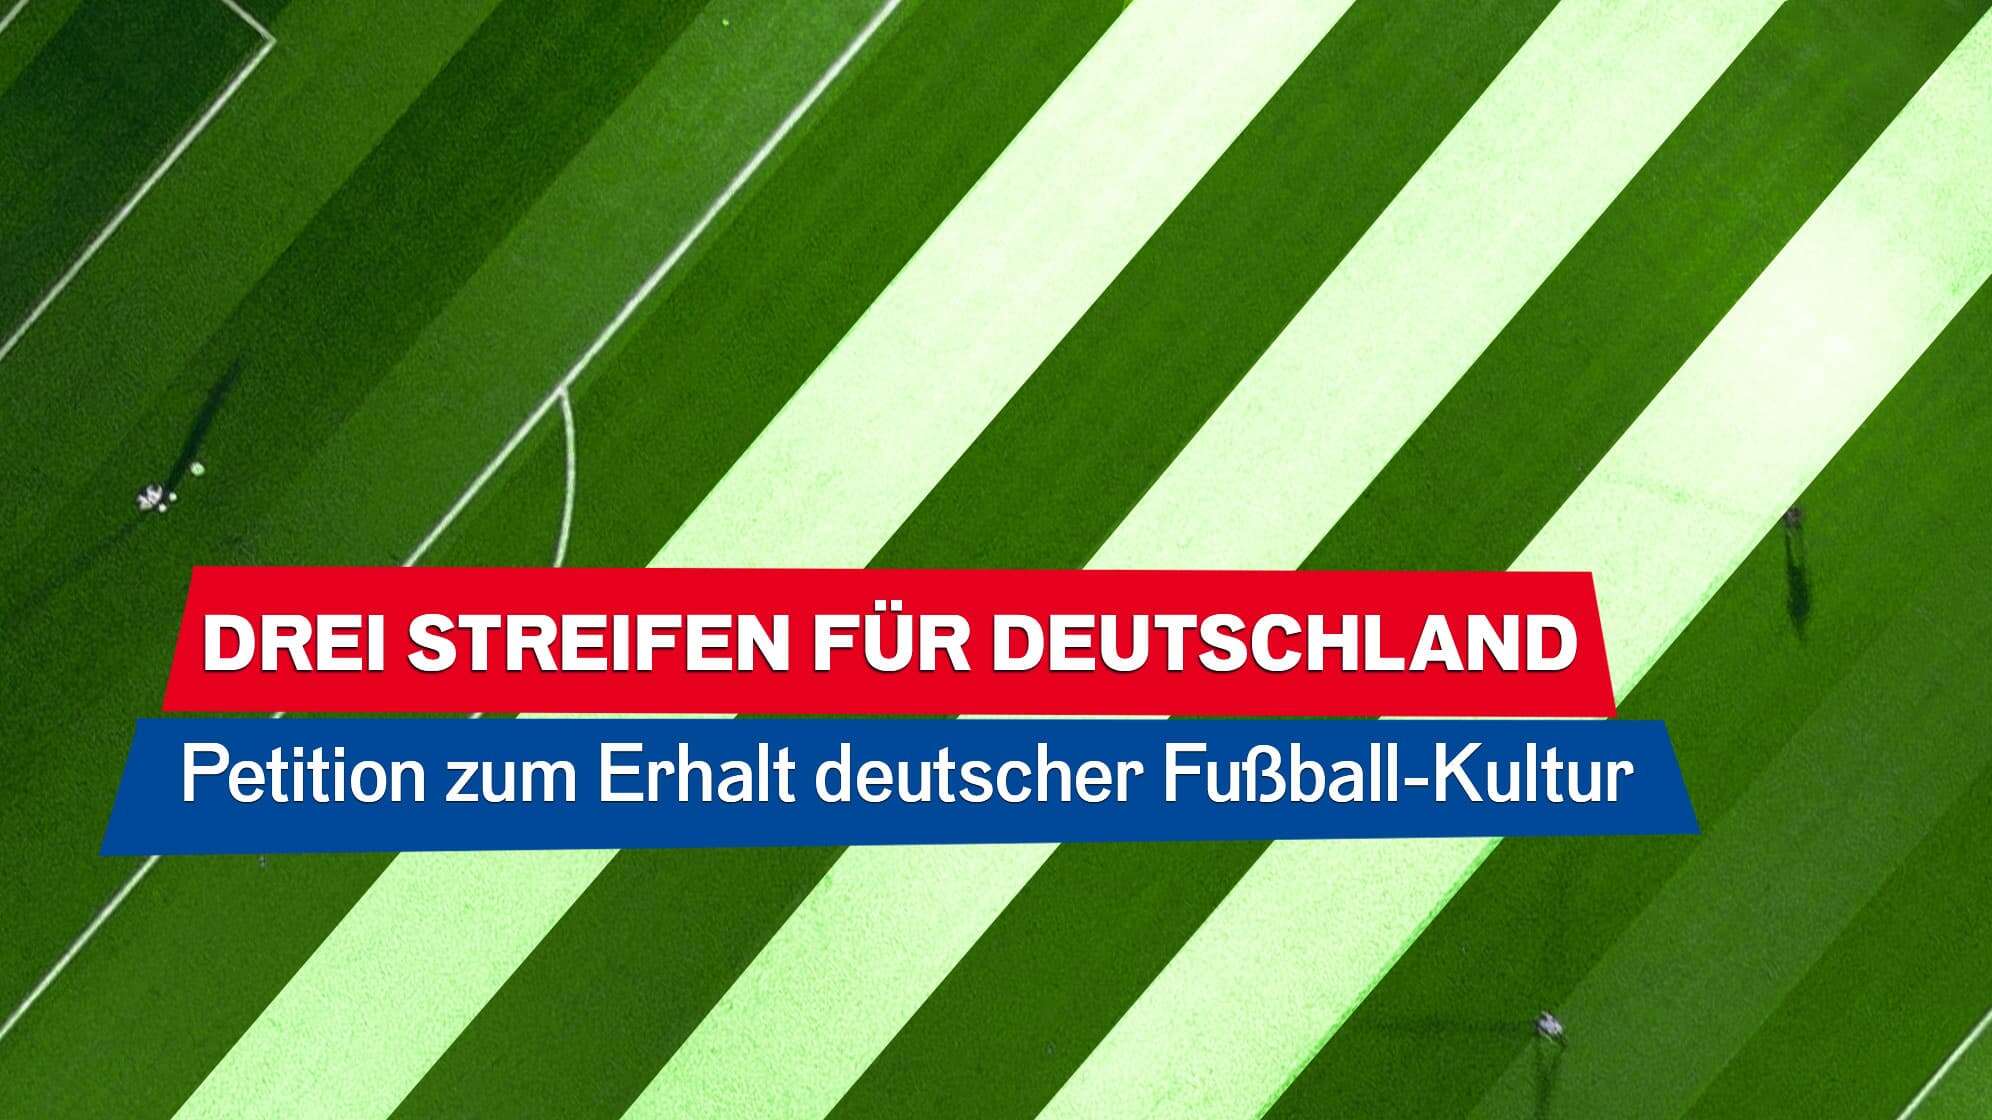 Bild eines Fußballplatzes von Oben, drei Streifen im Rasen sind weiß hervorgehoben, dazu der Text: Drei Streifen für Deutschland - Petition zum Erhalt deutscher Fußball-Kultur